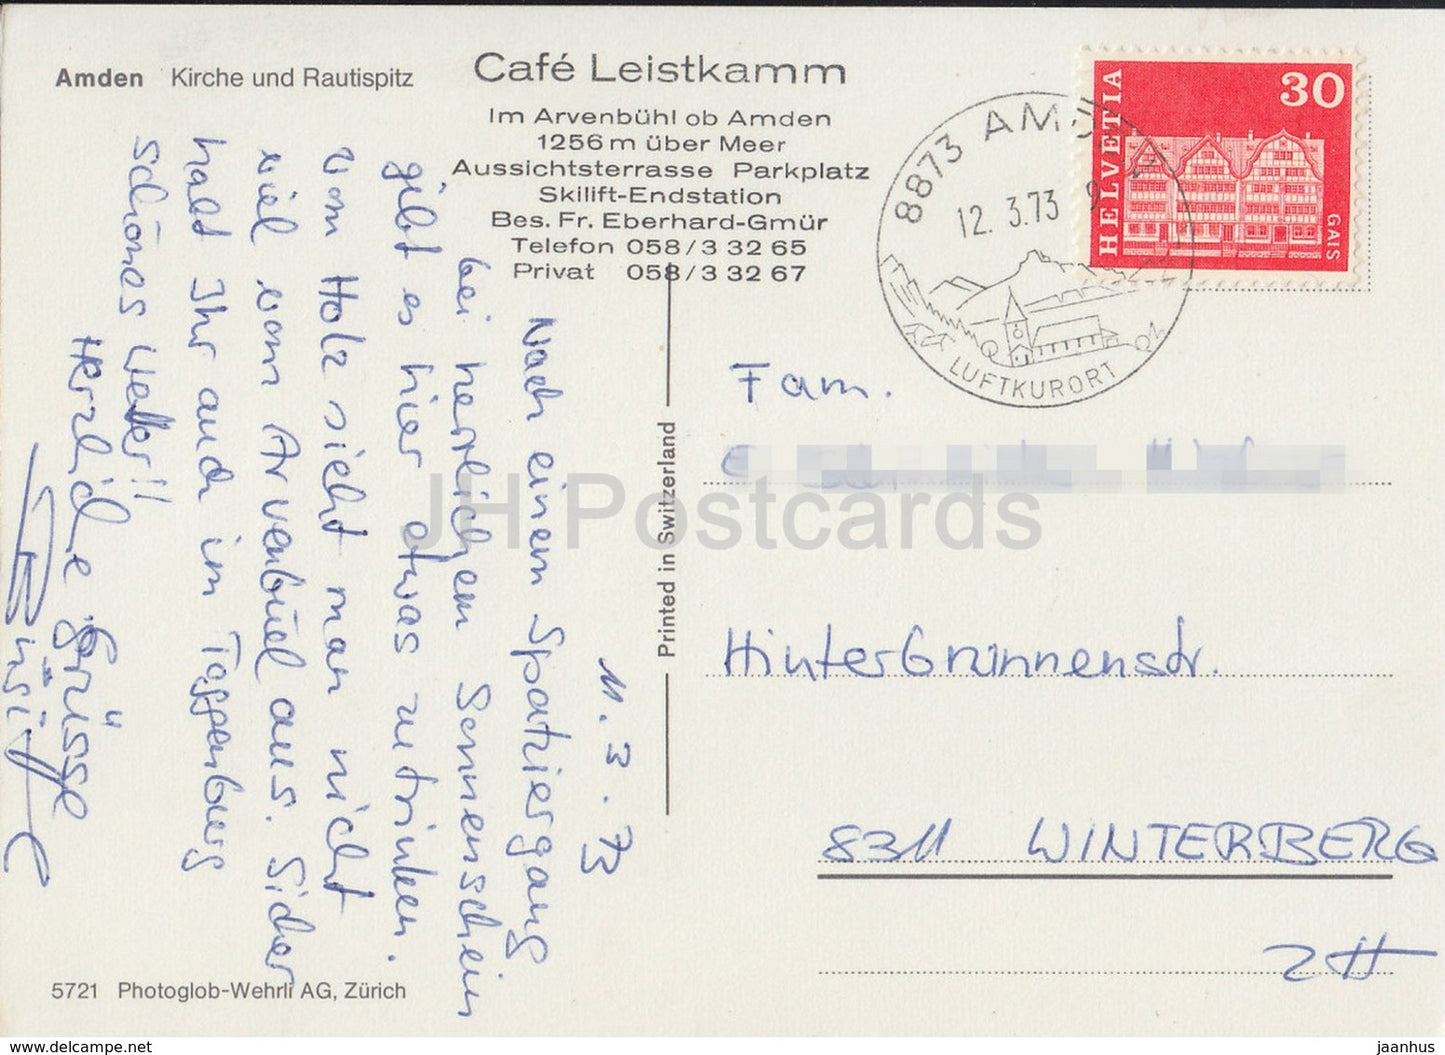 Amden - Kirche und Rautispitz - Cafe Leistkamm - church - 5721- 1973 - Switzerland - used